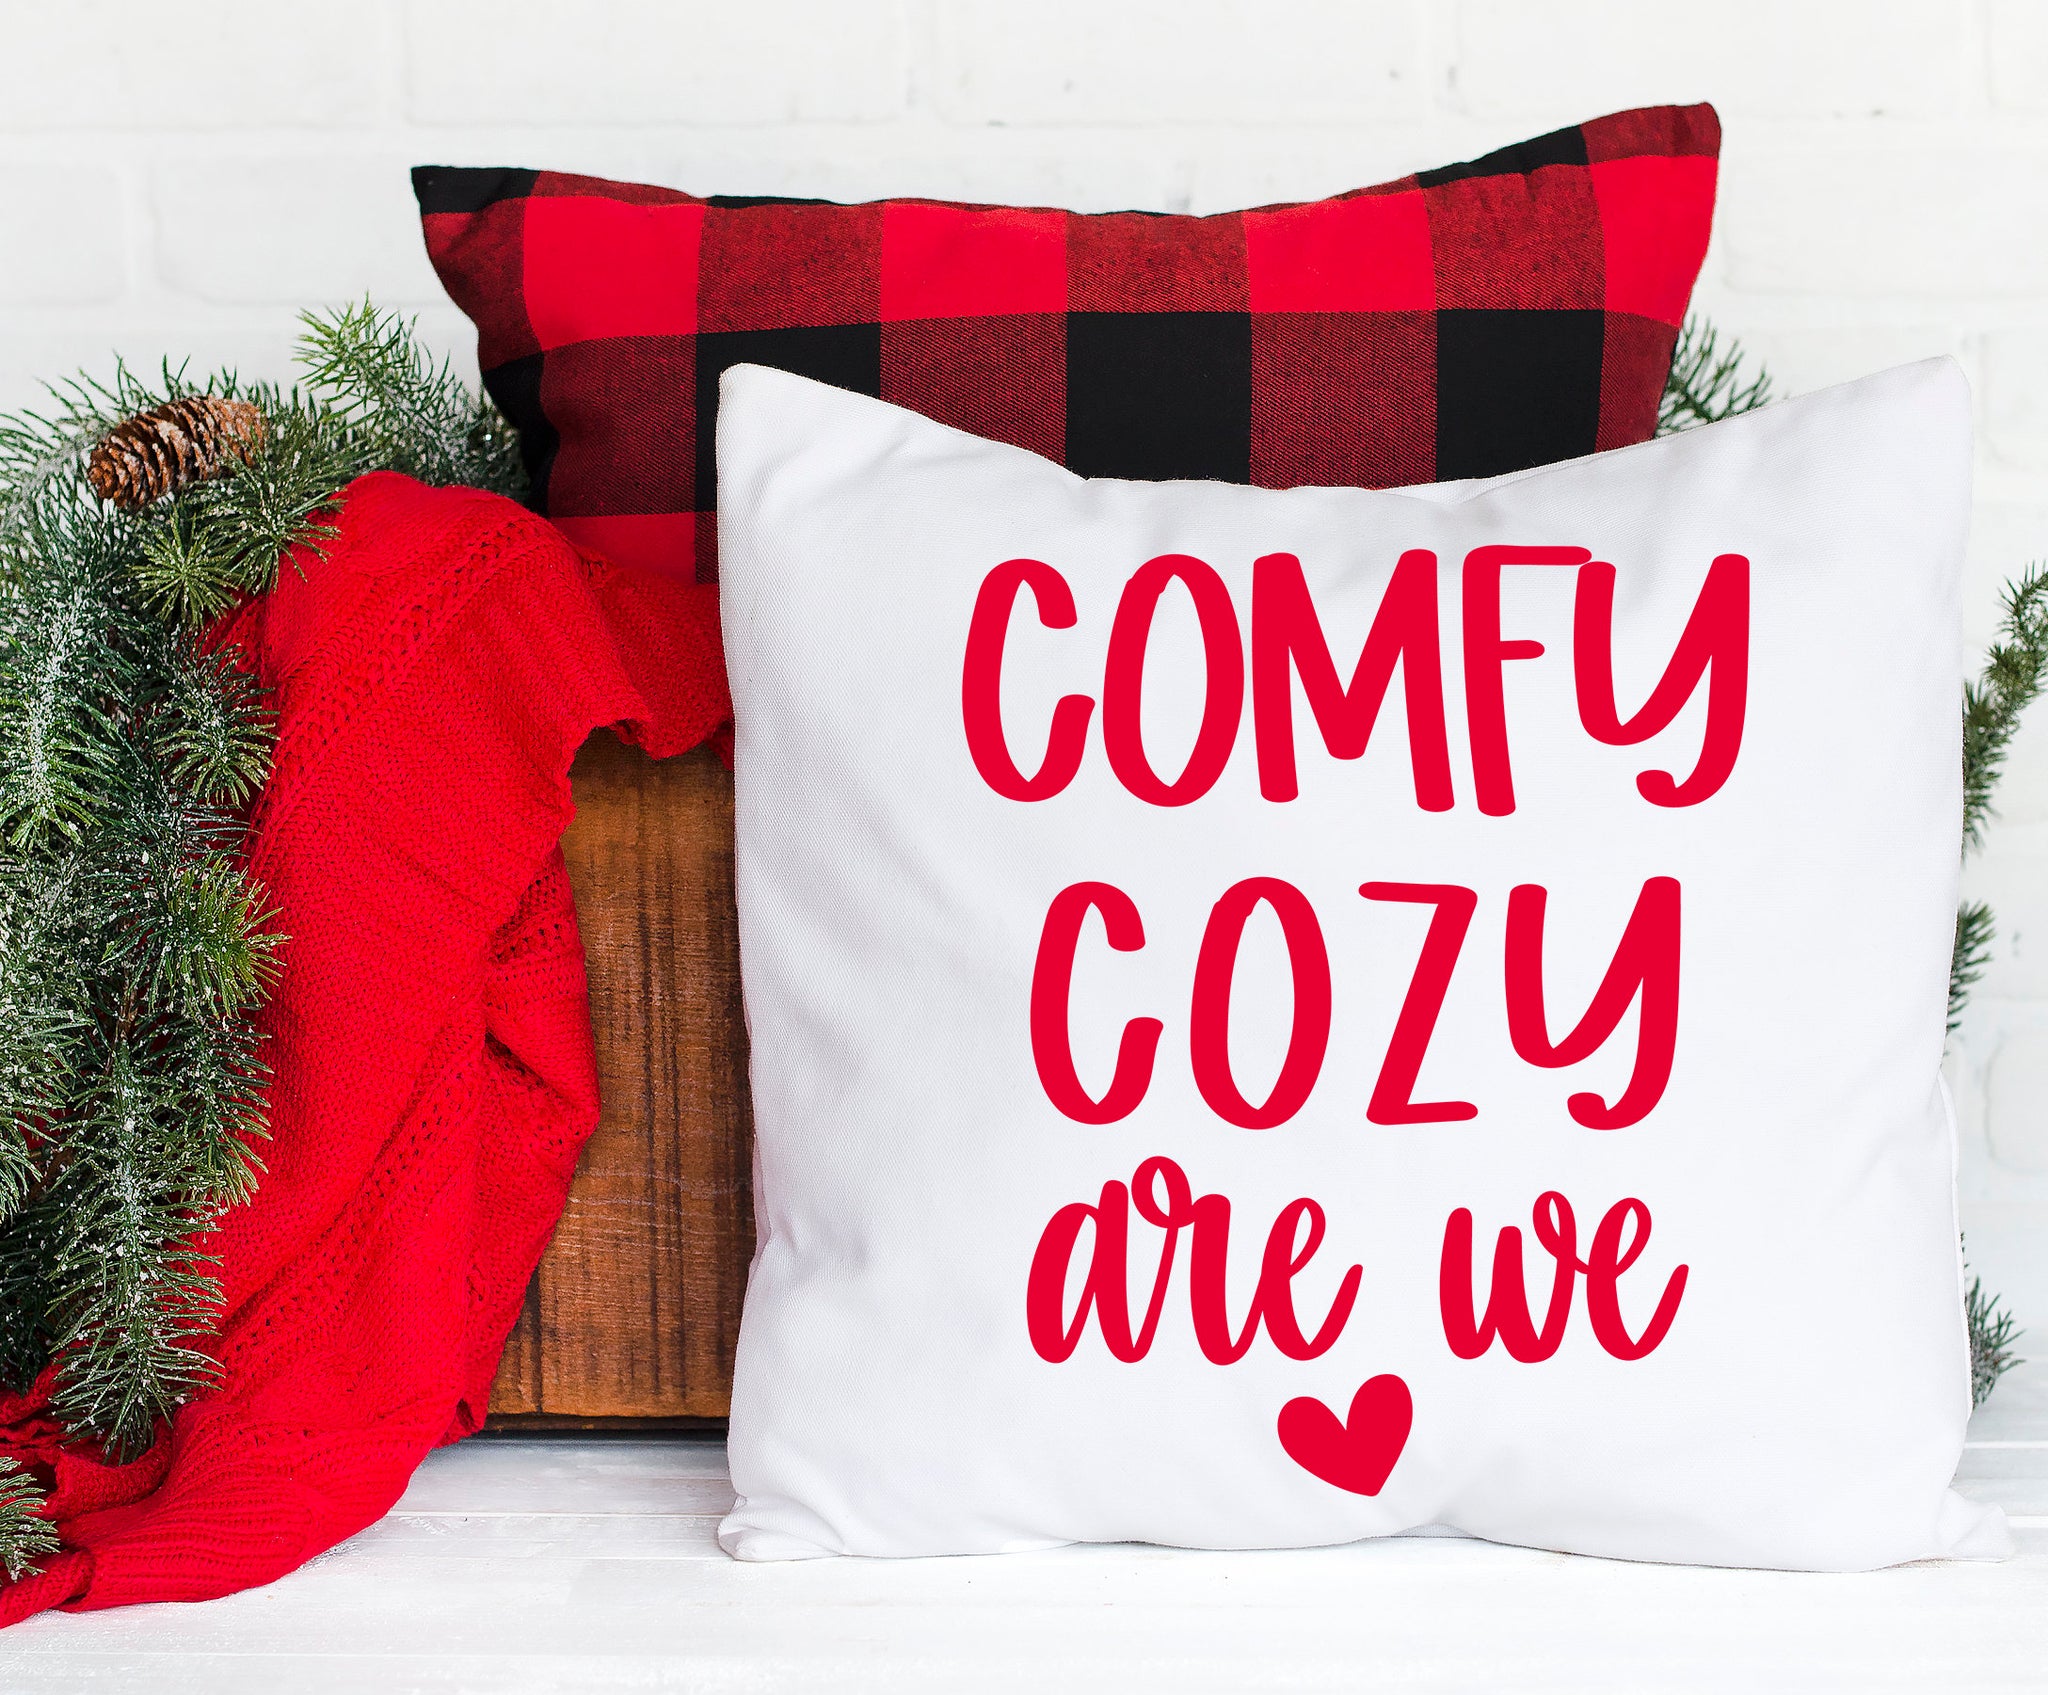 comfy cozy are we, christmas svg, comfy cozy svg, png, svg for pajamas, modern farmhouse, ornament